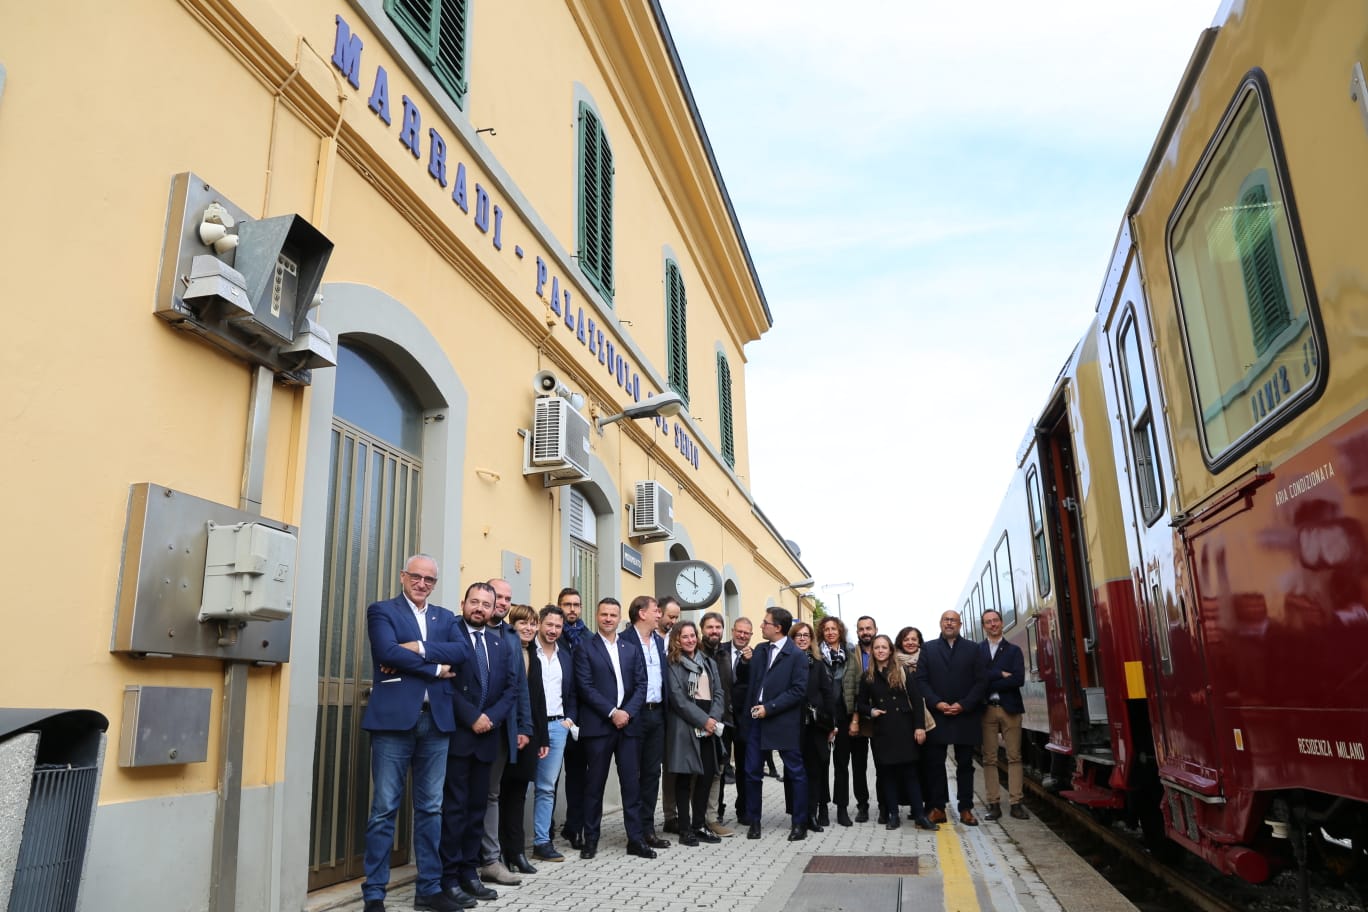 Consiglio Metropolitano sulla linea ferroviaria Faentina